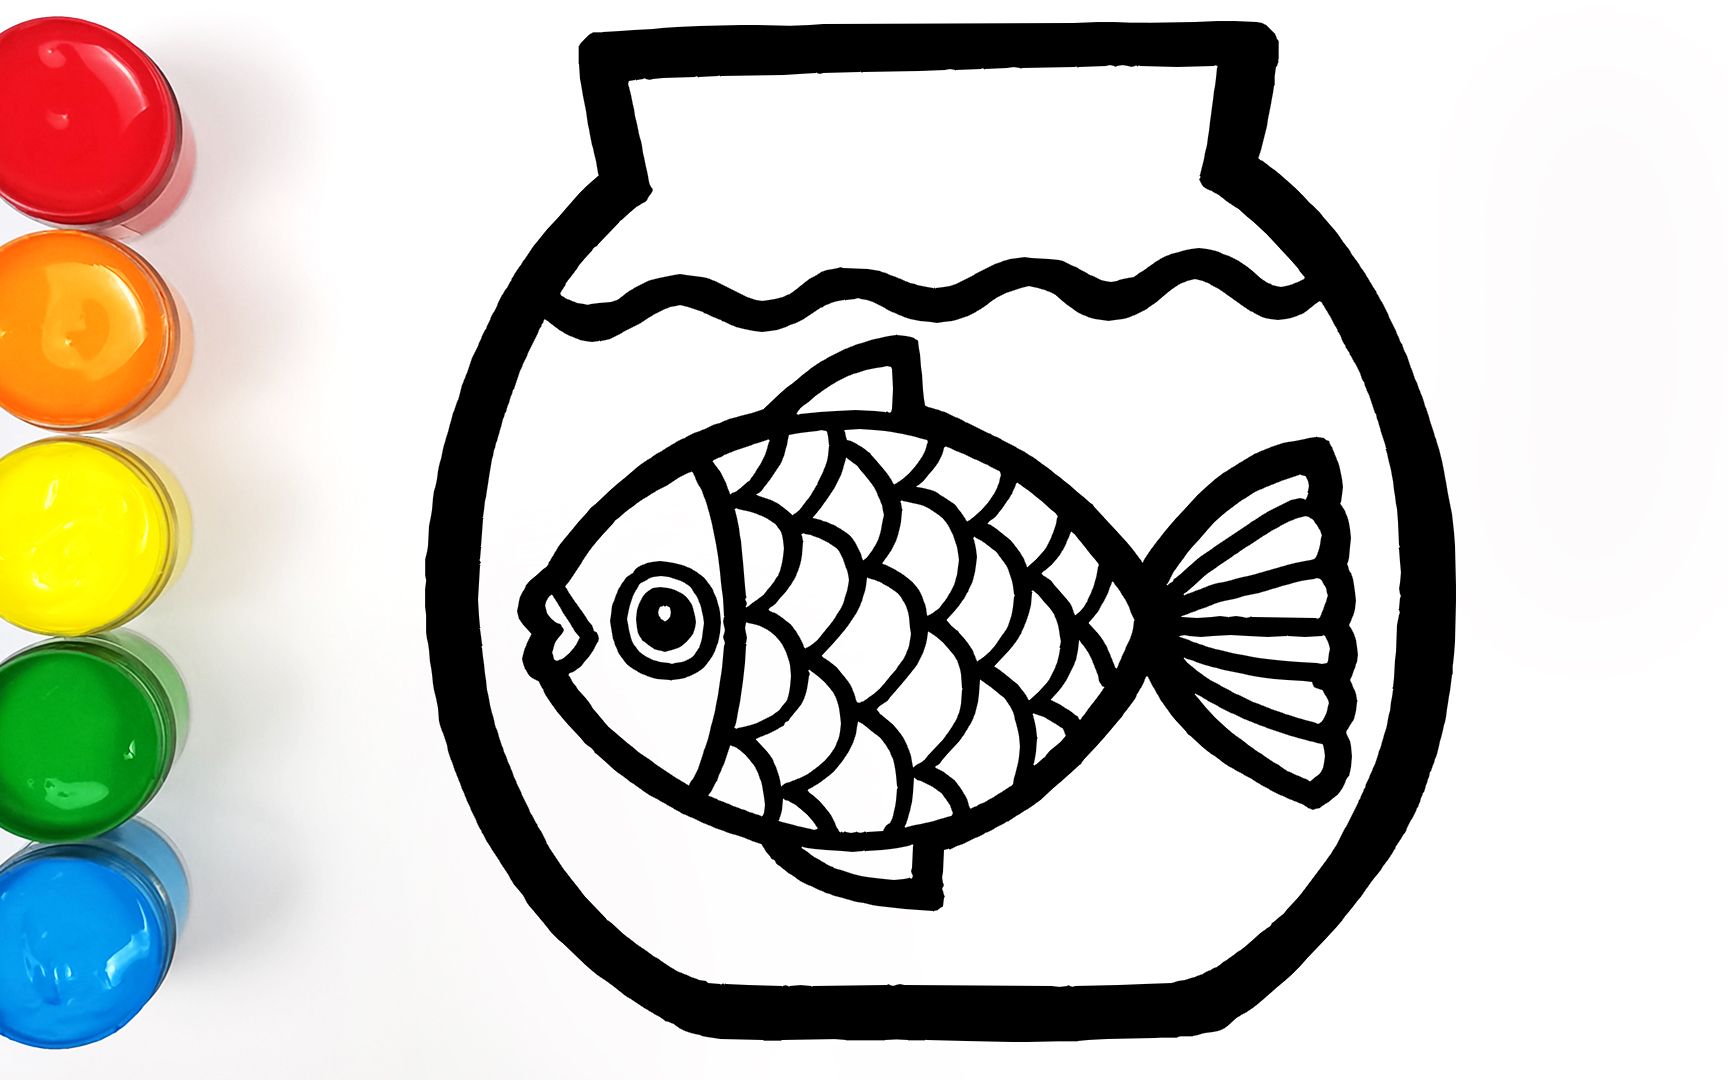 趣味填色儿童简笔画 鱼缸里有一只孤独的鱼游来游去 陪伴他一下吧